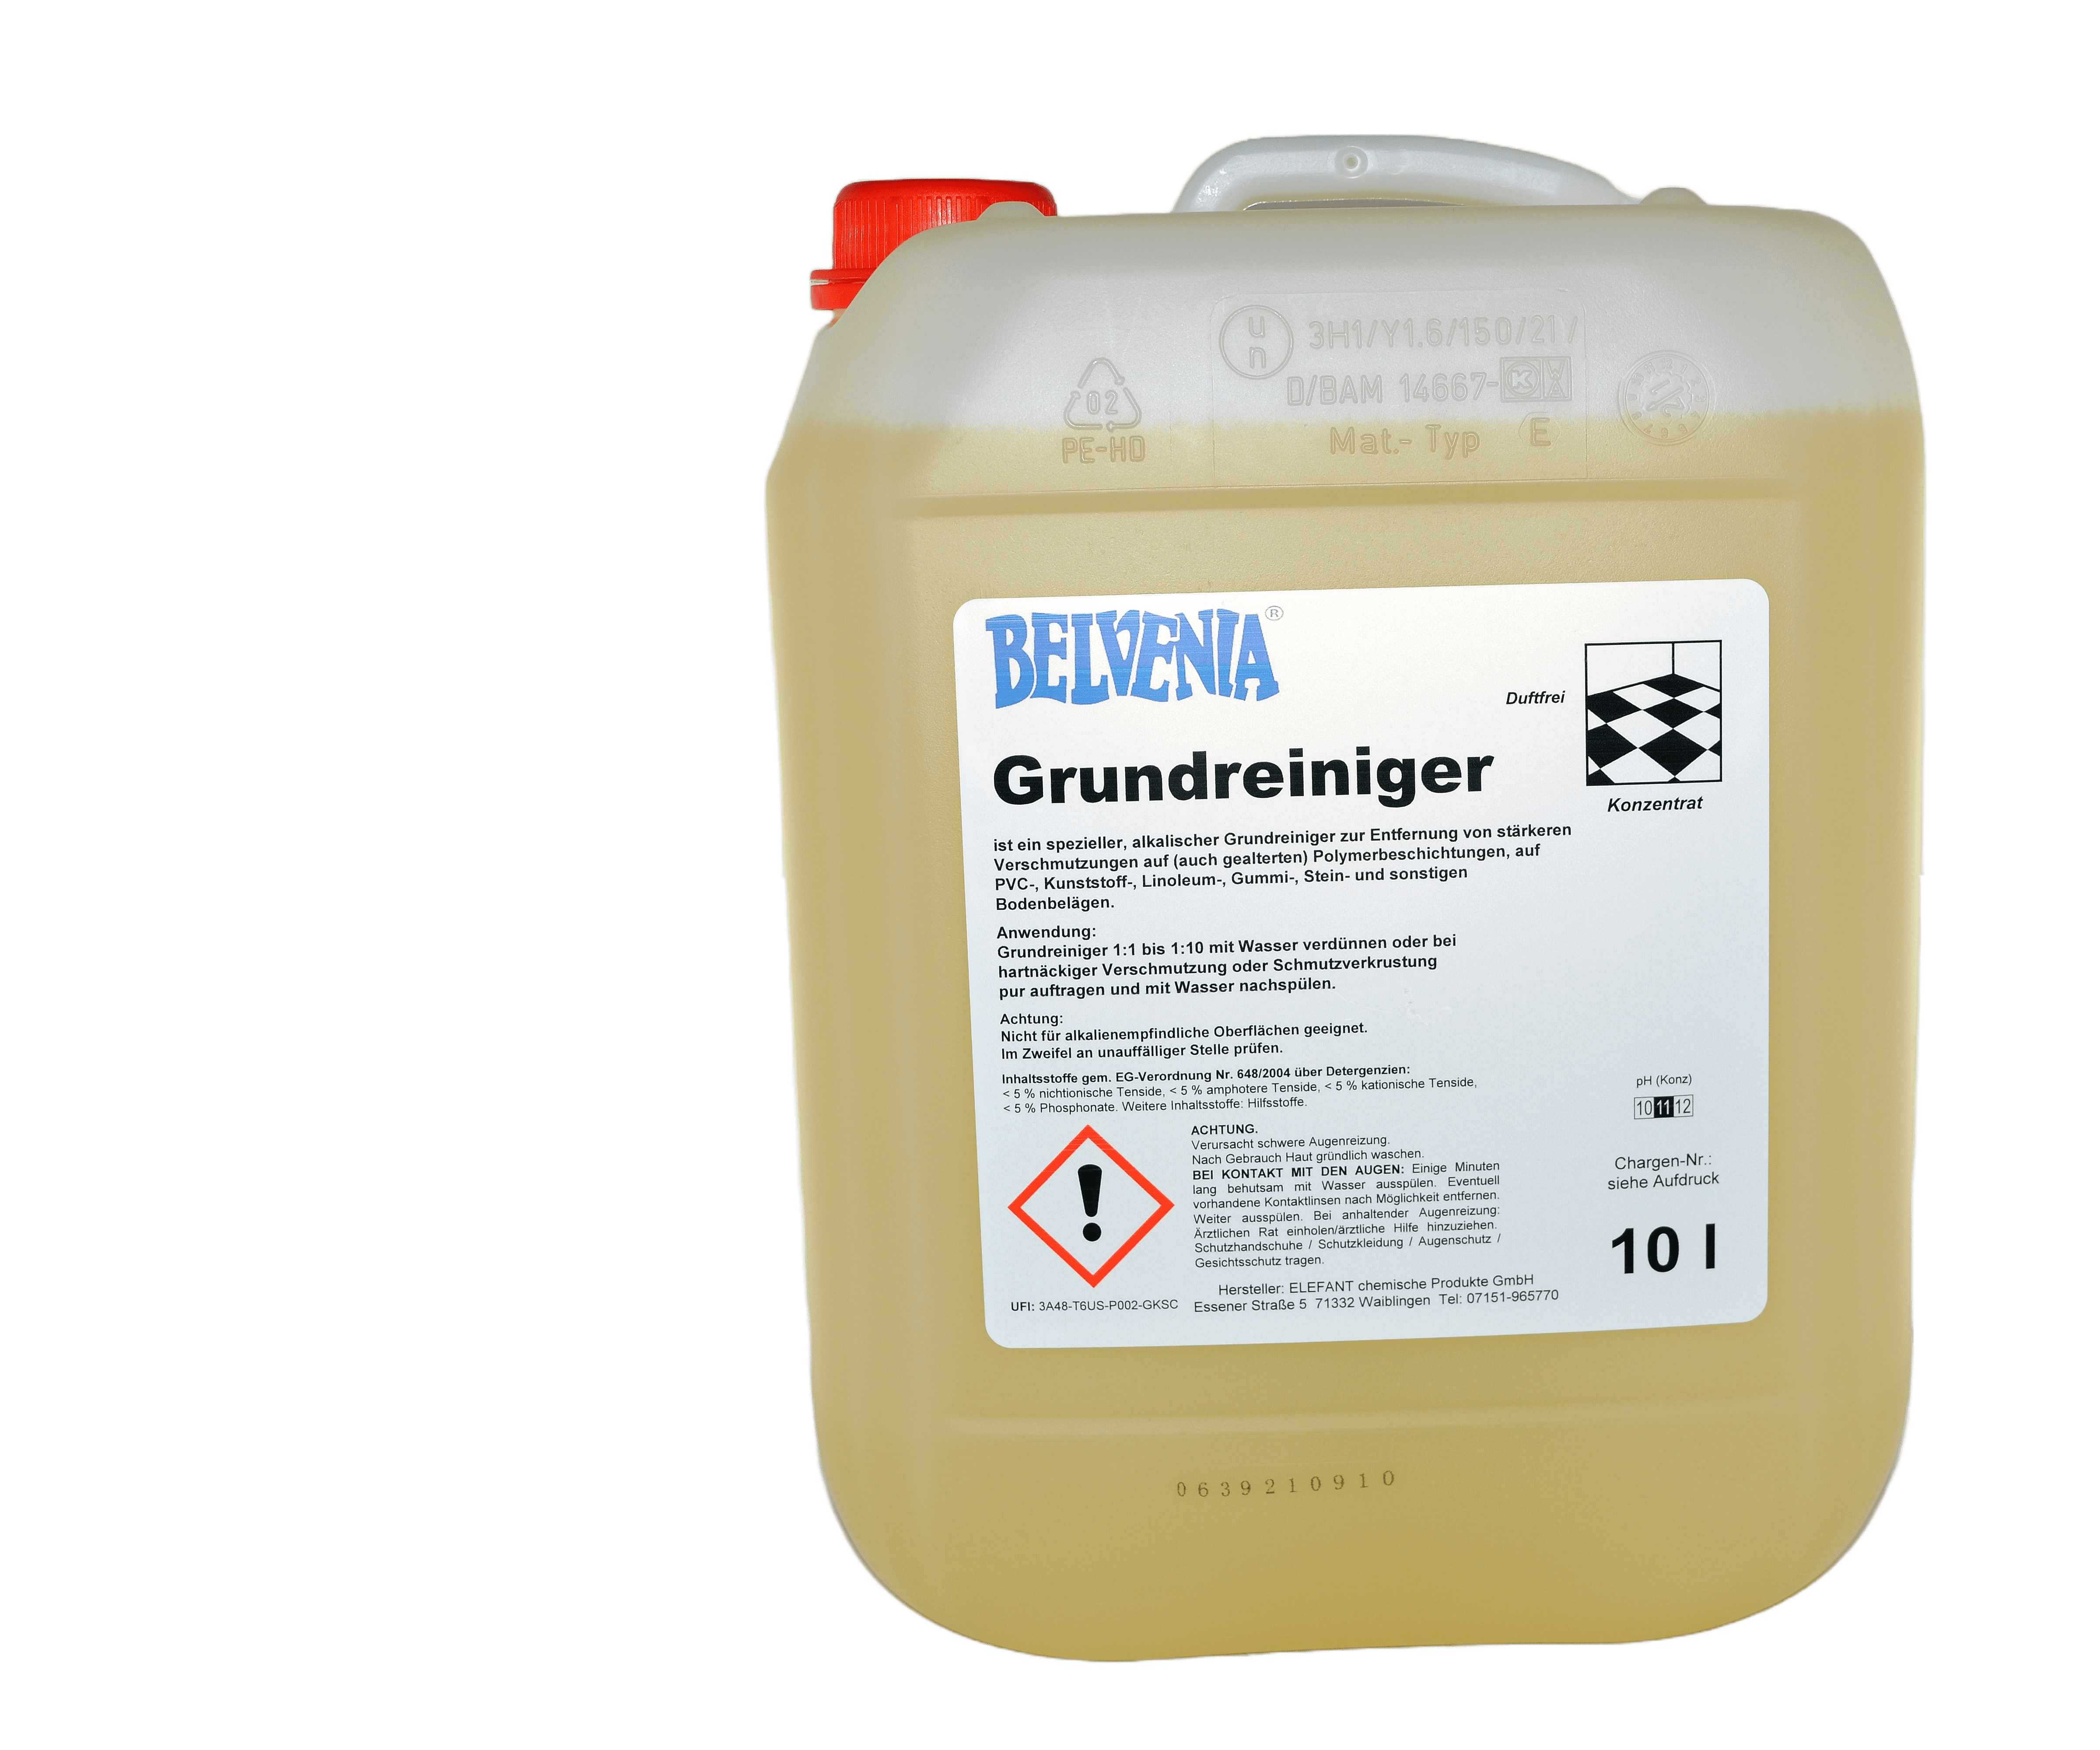 BELVENIA-Grundreiniger 10 Liter Kanister